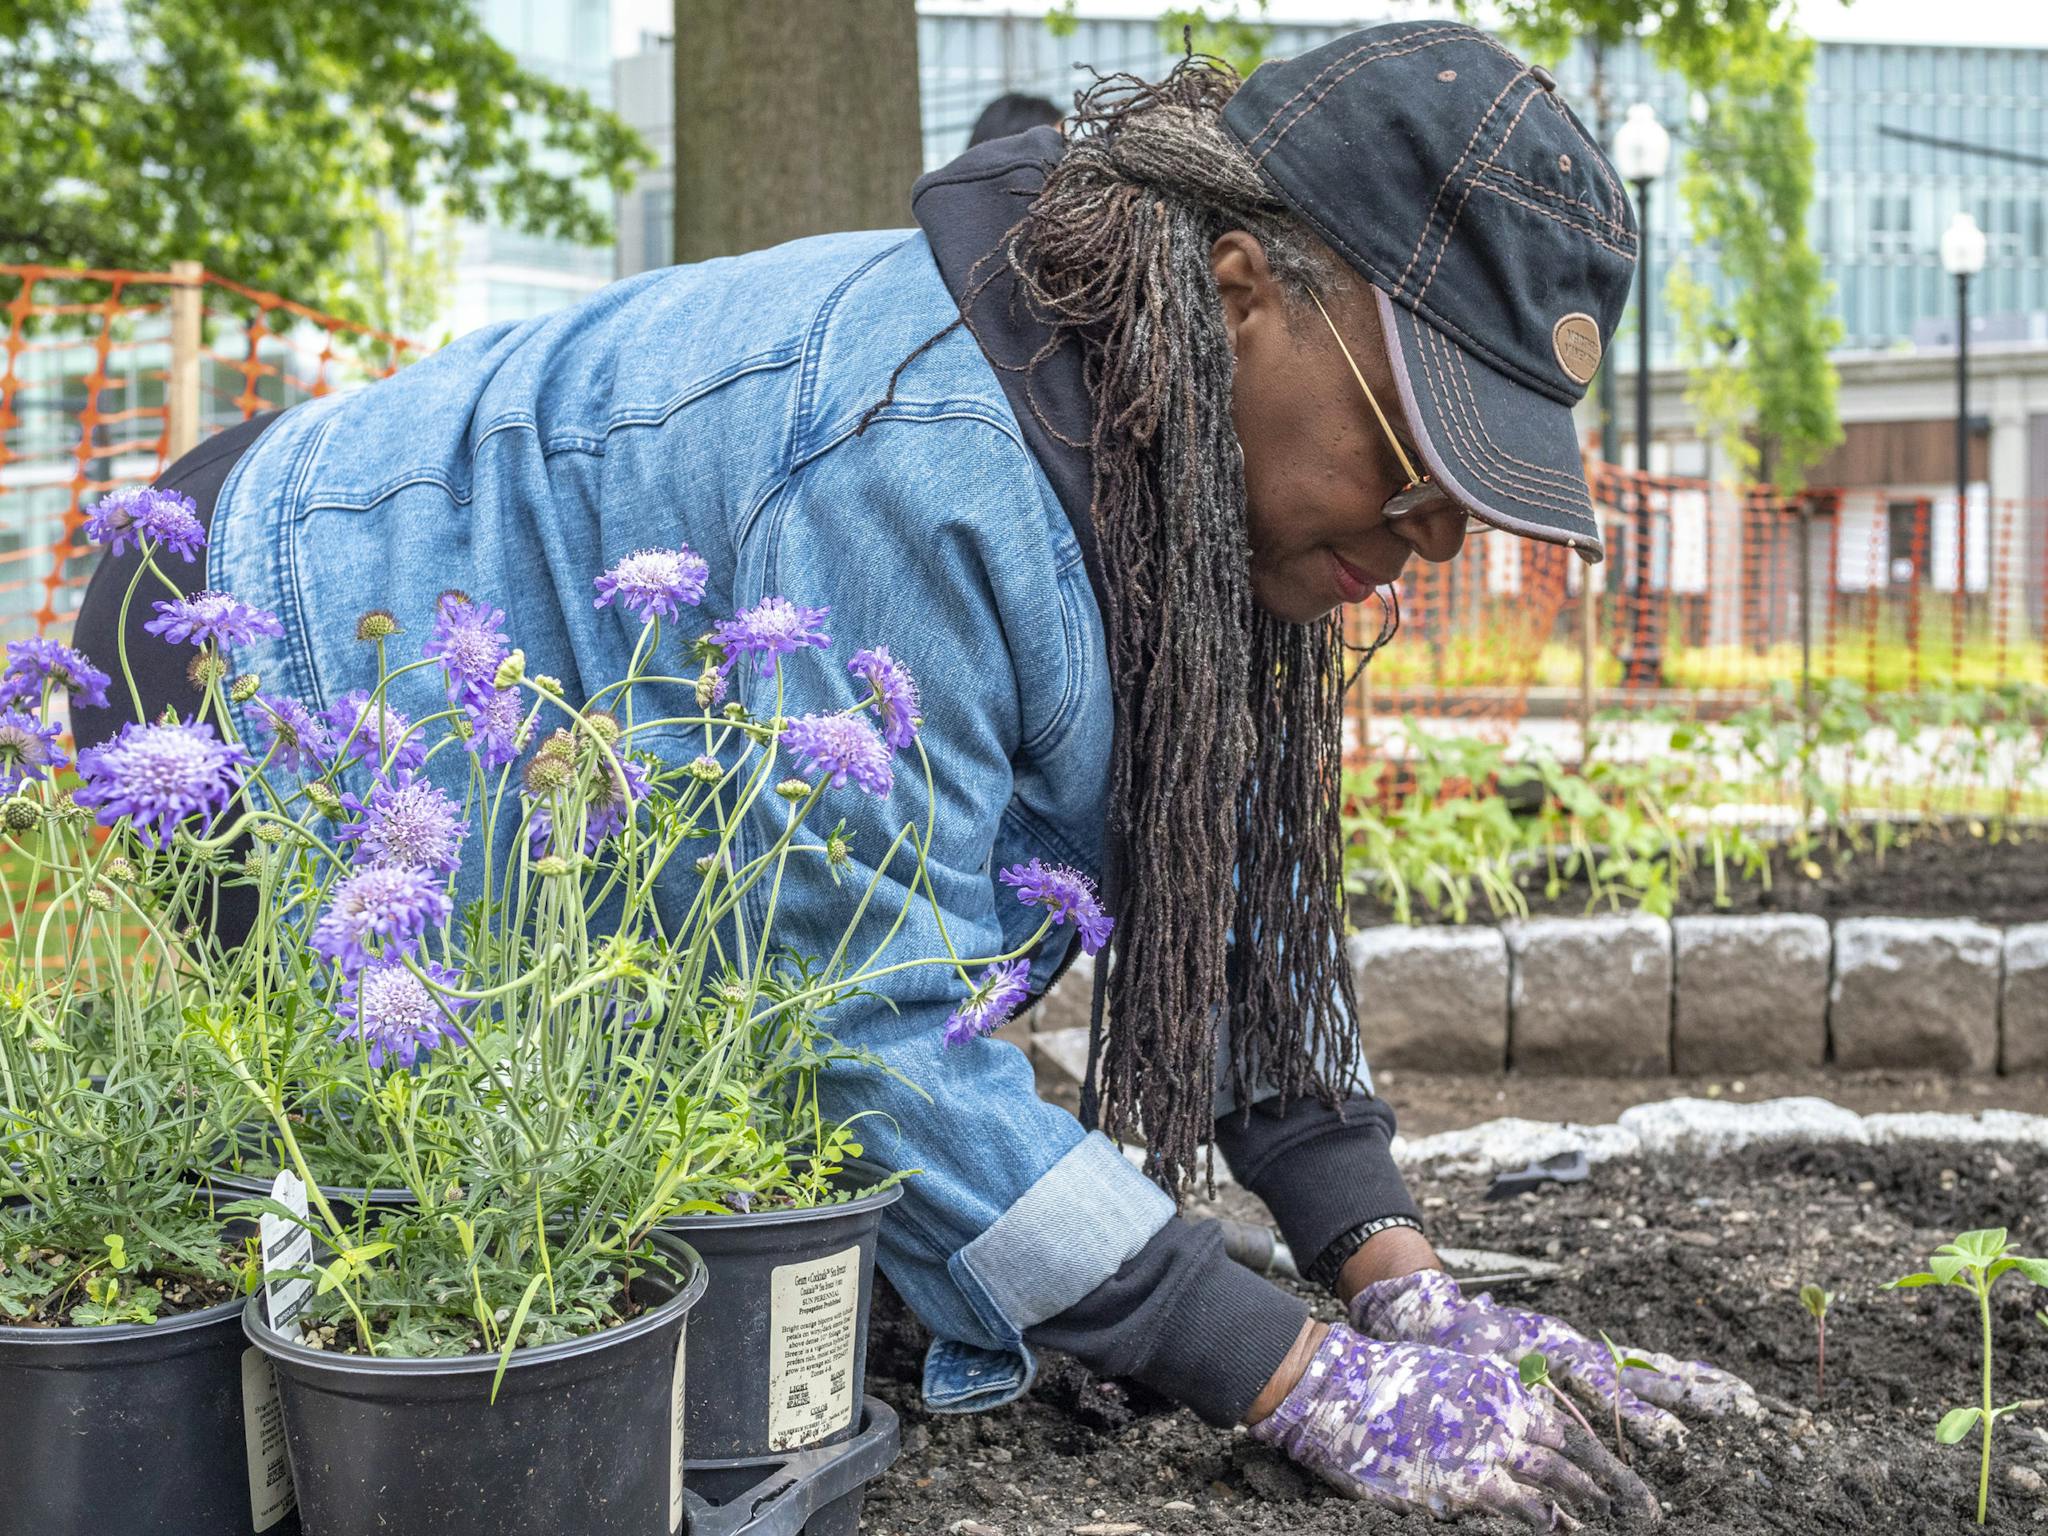 Ekua Holmes, wearing gloves, kneels over a garden, beside a pot of purple flowers.